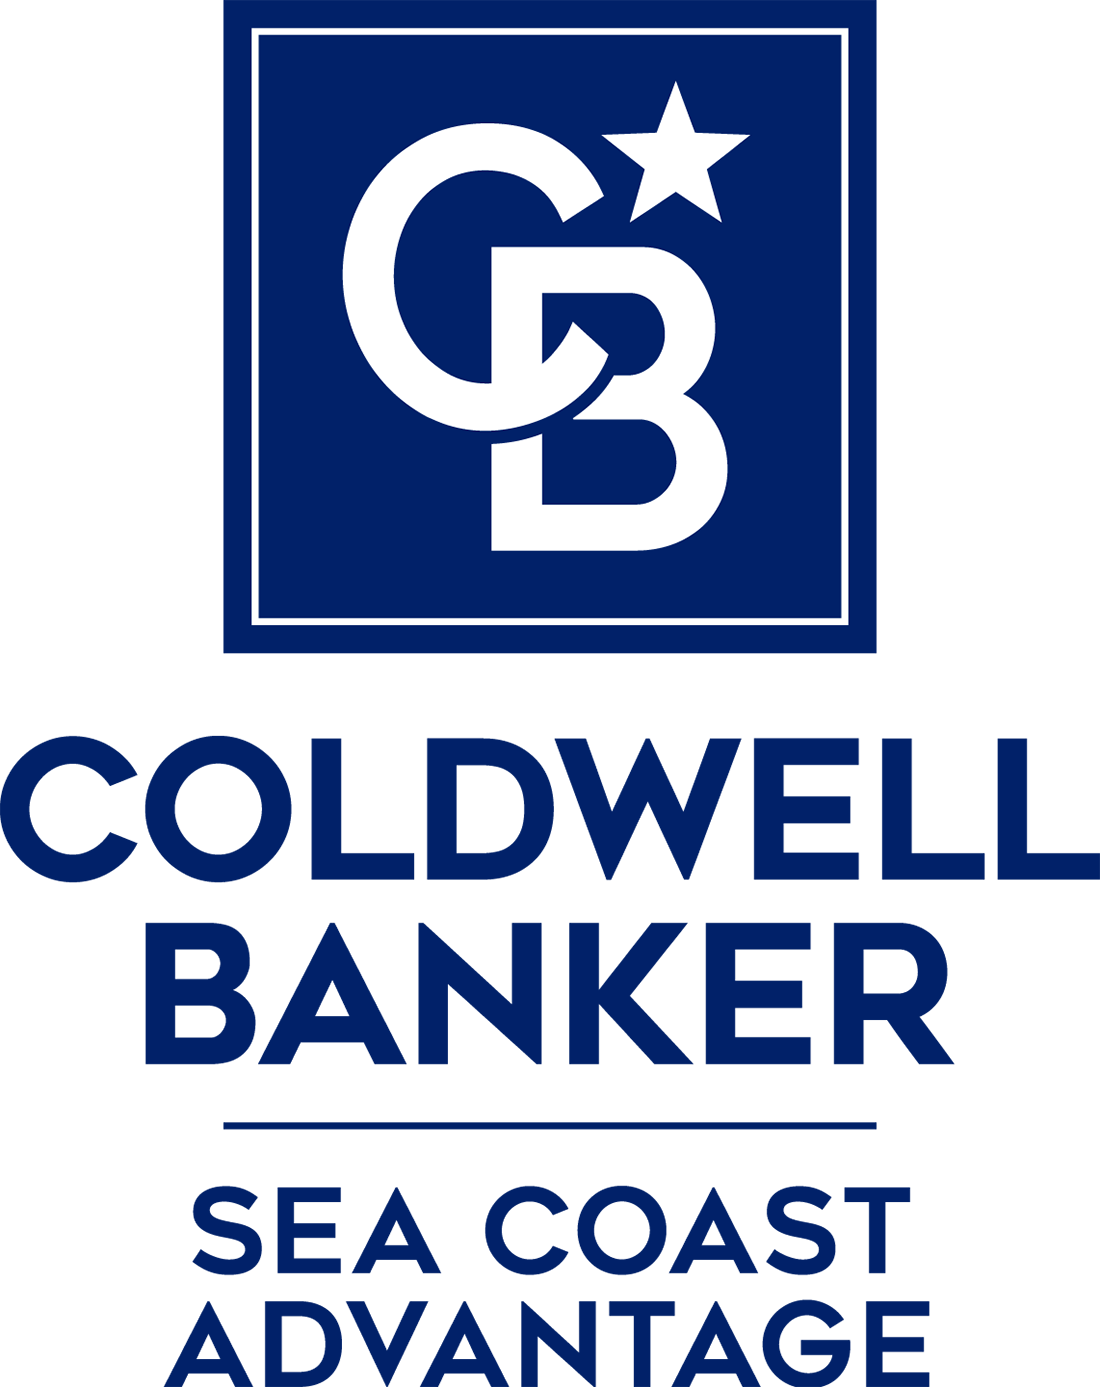 Allison Olson - Coldwell Banker Sea Coast Advantage Realty Logo